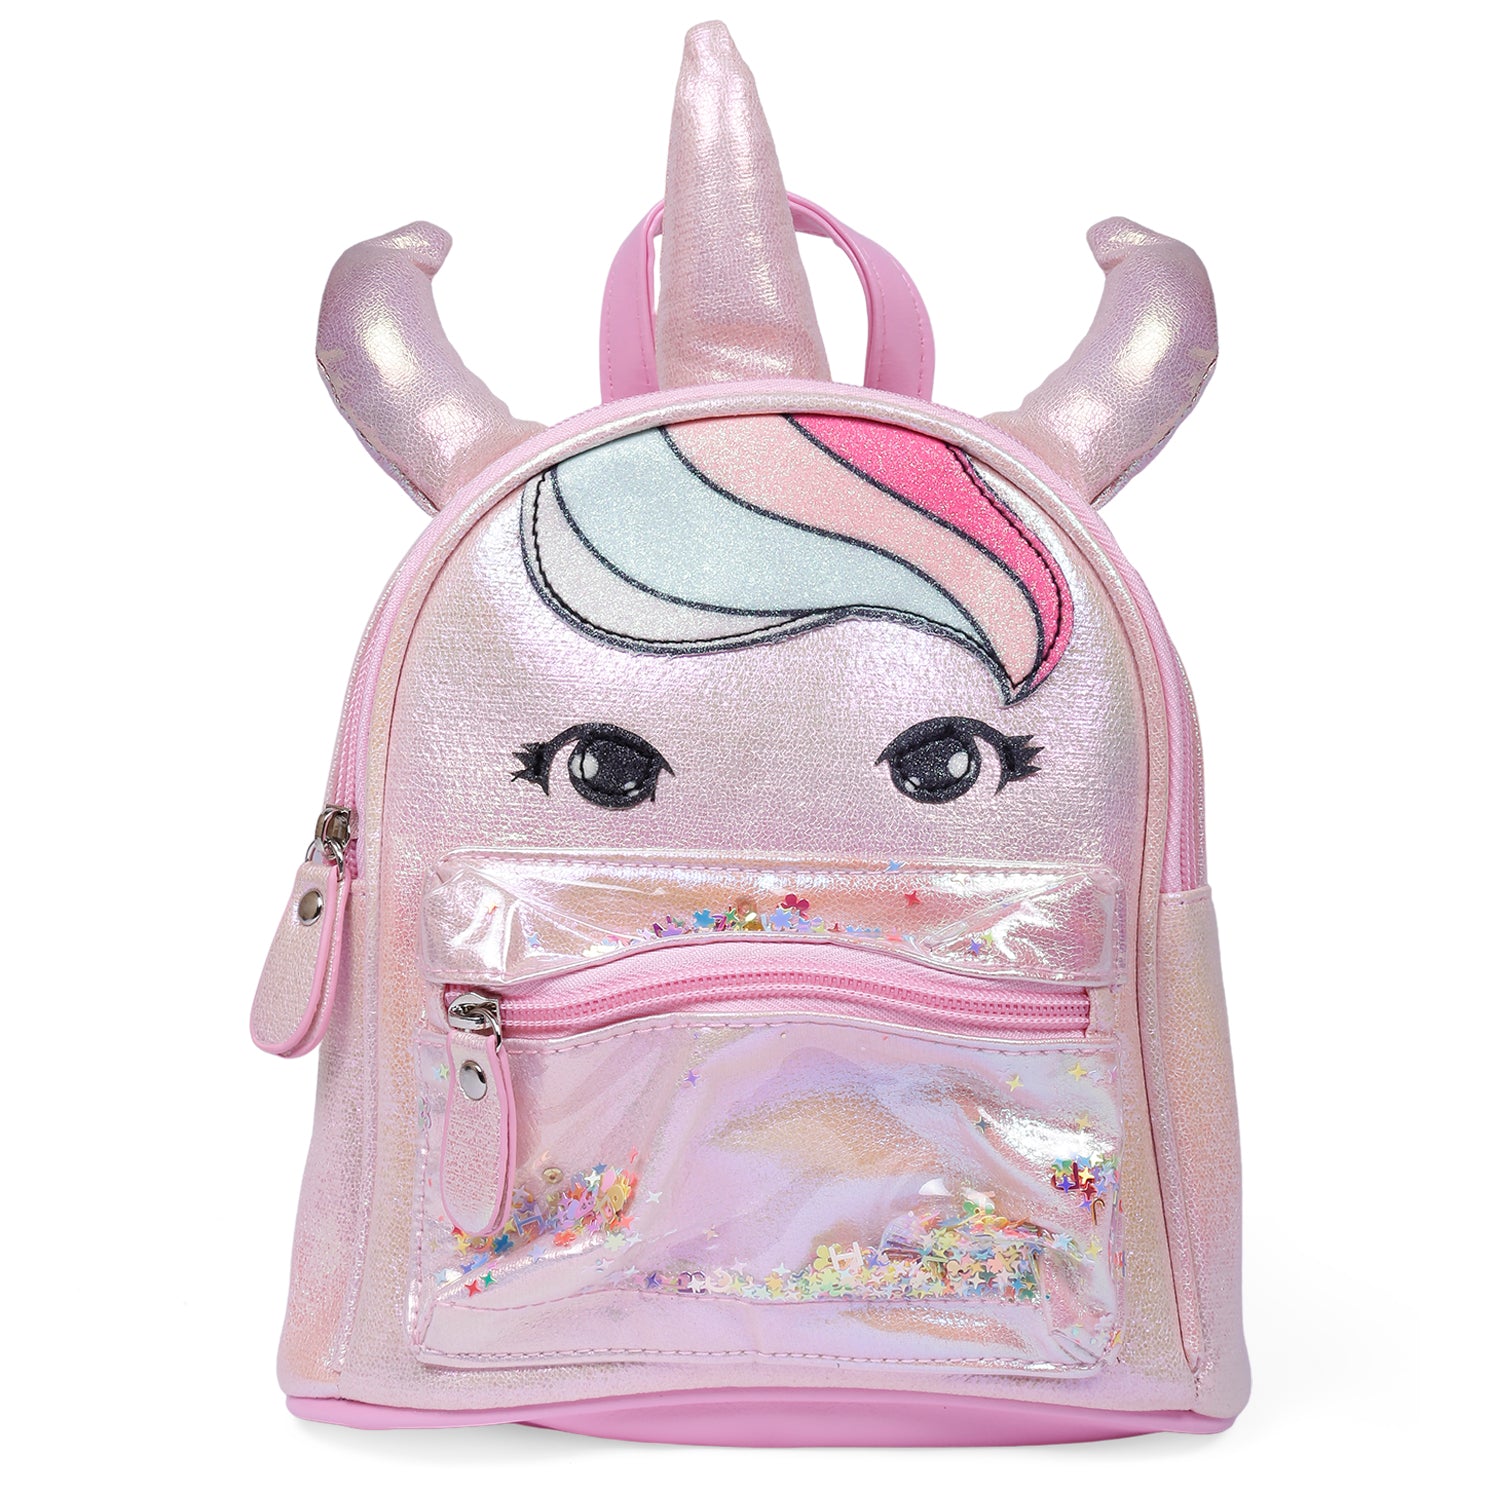 Handbag for Girls toddler handbag Little Girl small purses for teen | eBay